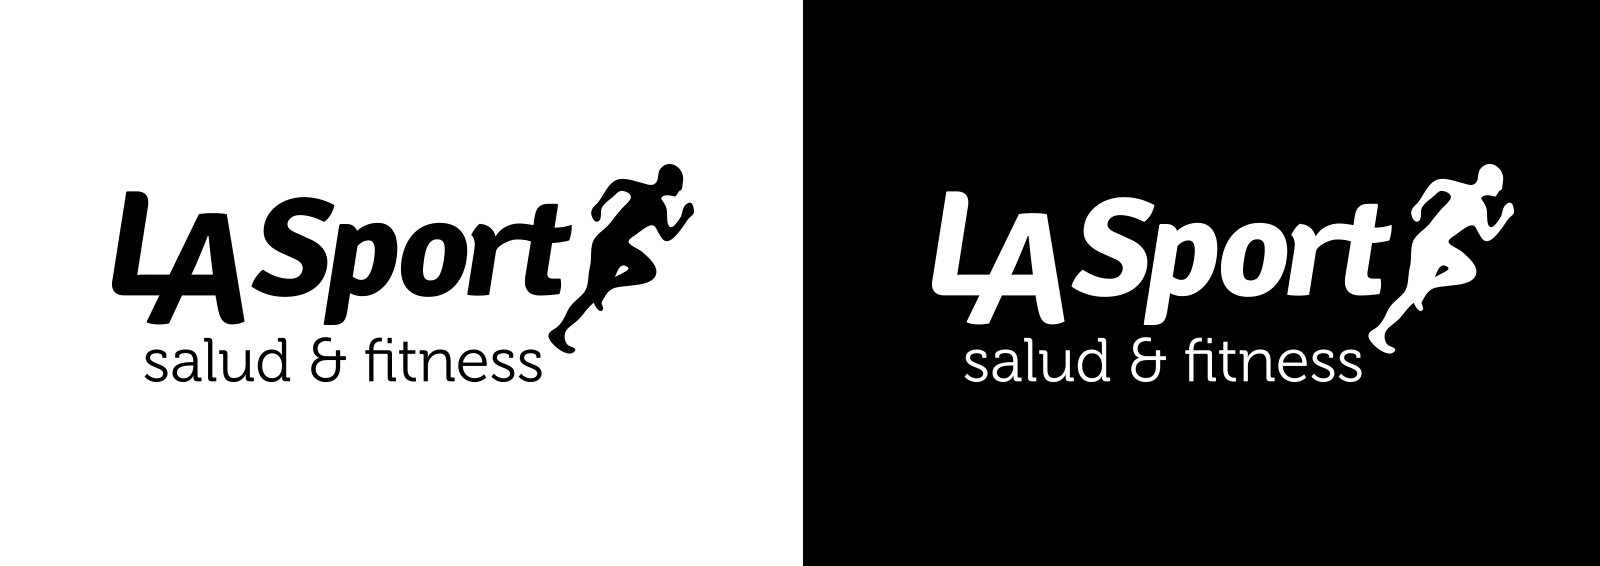 Logotipo LA Sport. Version positivo y negativo